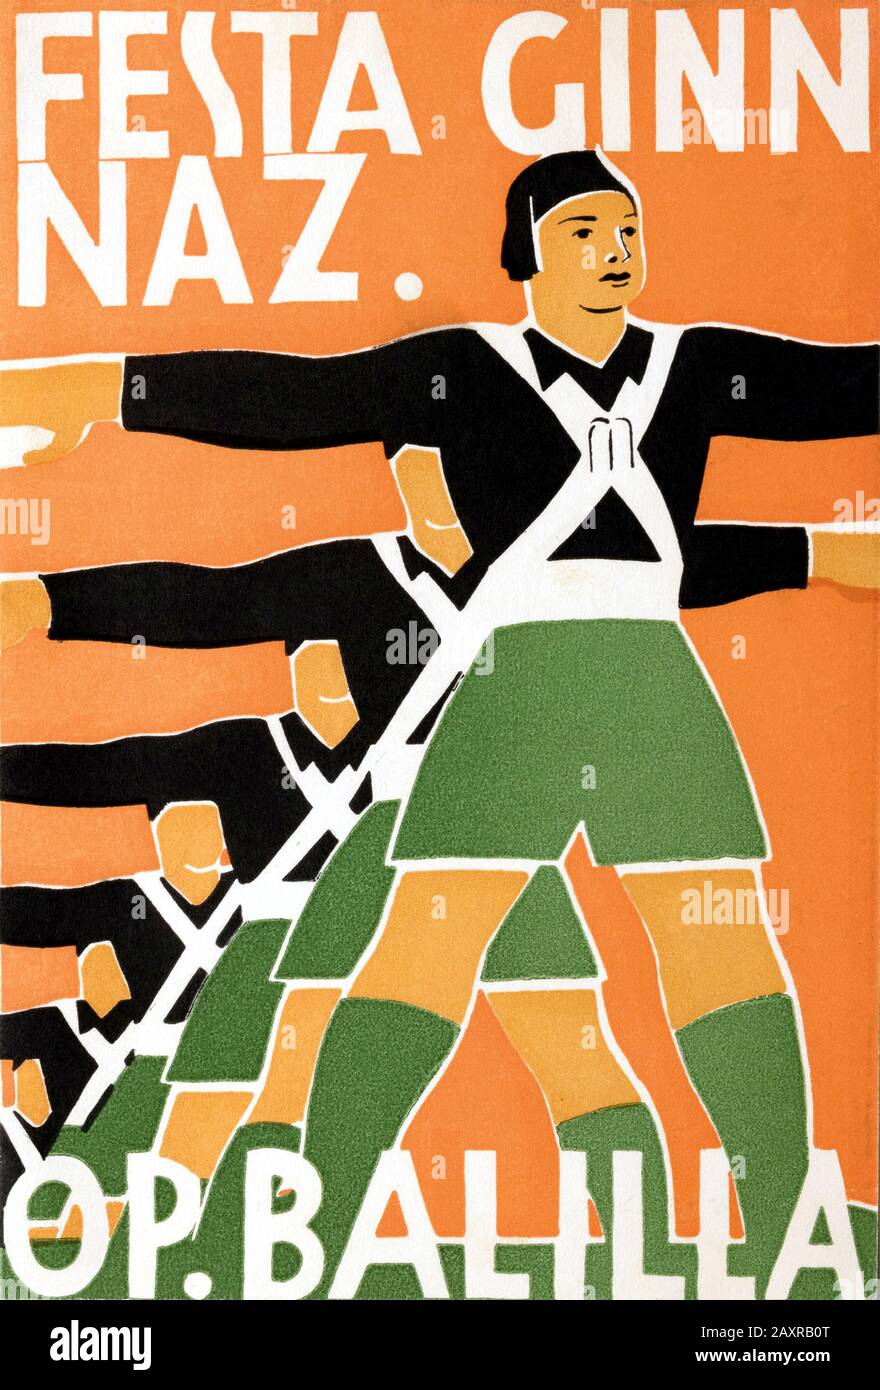 1930 , ROMA , ITALY : Poster propaganda for FESTA GINNICA NAZIONALE DELL'OPERA BALILLA , 1930 . Artwork by unknown artist .  - NATIONAL GYMNIAN PARTY OF THE BALILLA OPERA - BENITO MUSSOLINI - OPERA BALILLA - FASCISMO - SPORT - GYMNASTICS - GINNIC RACES - FASCISTI - FASCISTA - FASCIST - FASCISM - FOTO STORICA - STORICHE - HISTORY - PROPAGANDA - 30's - '30 - ANNI T?RENTA  - manifesto - CAMICIA NERA - BLACK SHIRT - ITALY - ITALIA - XX CENTURY - NOVECENTO - INFANZIA - CHILDHOOD - DITTATURA - DICTATORSHIP - REGIME TOTALITARIO - child - children - bambino - bambini --- Archivio GBB Stock Photo